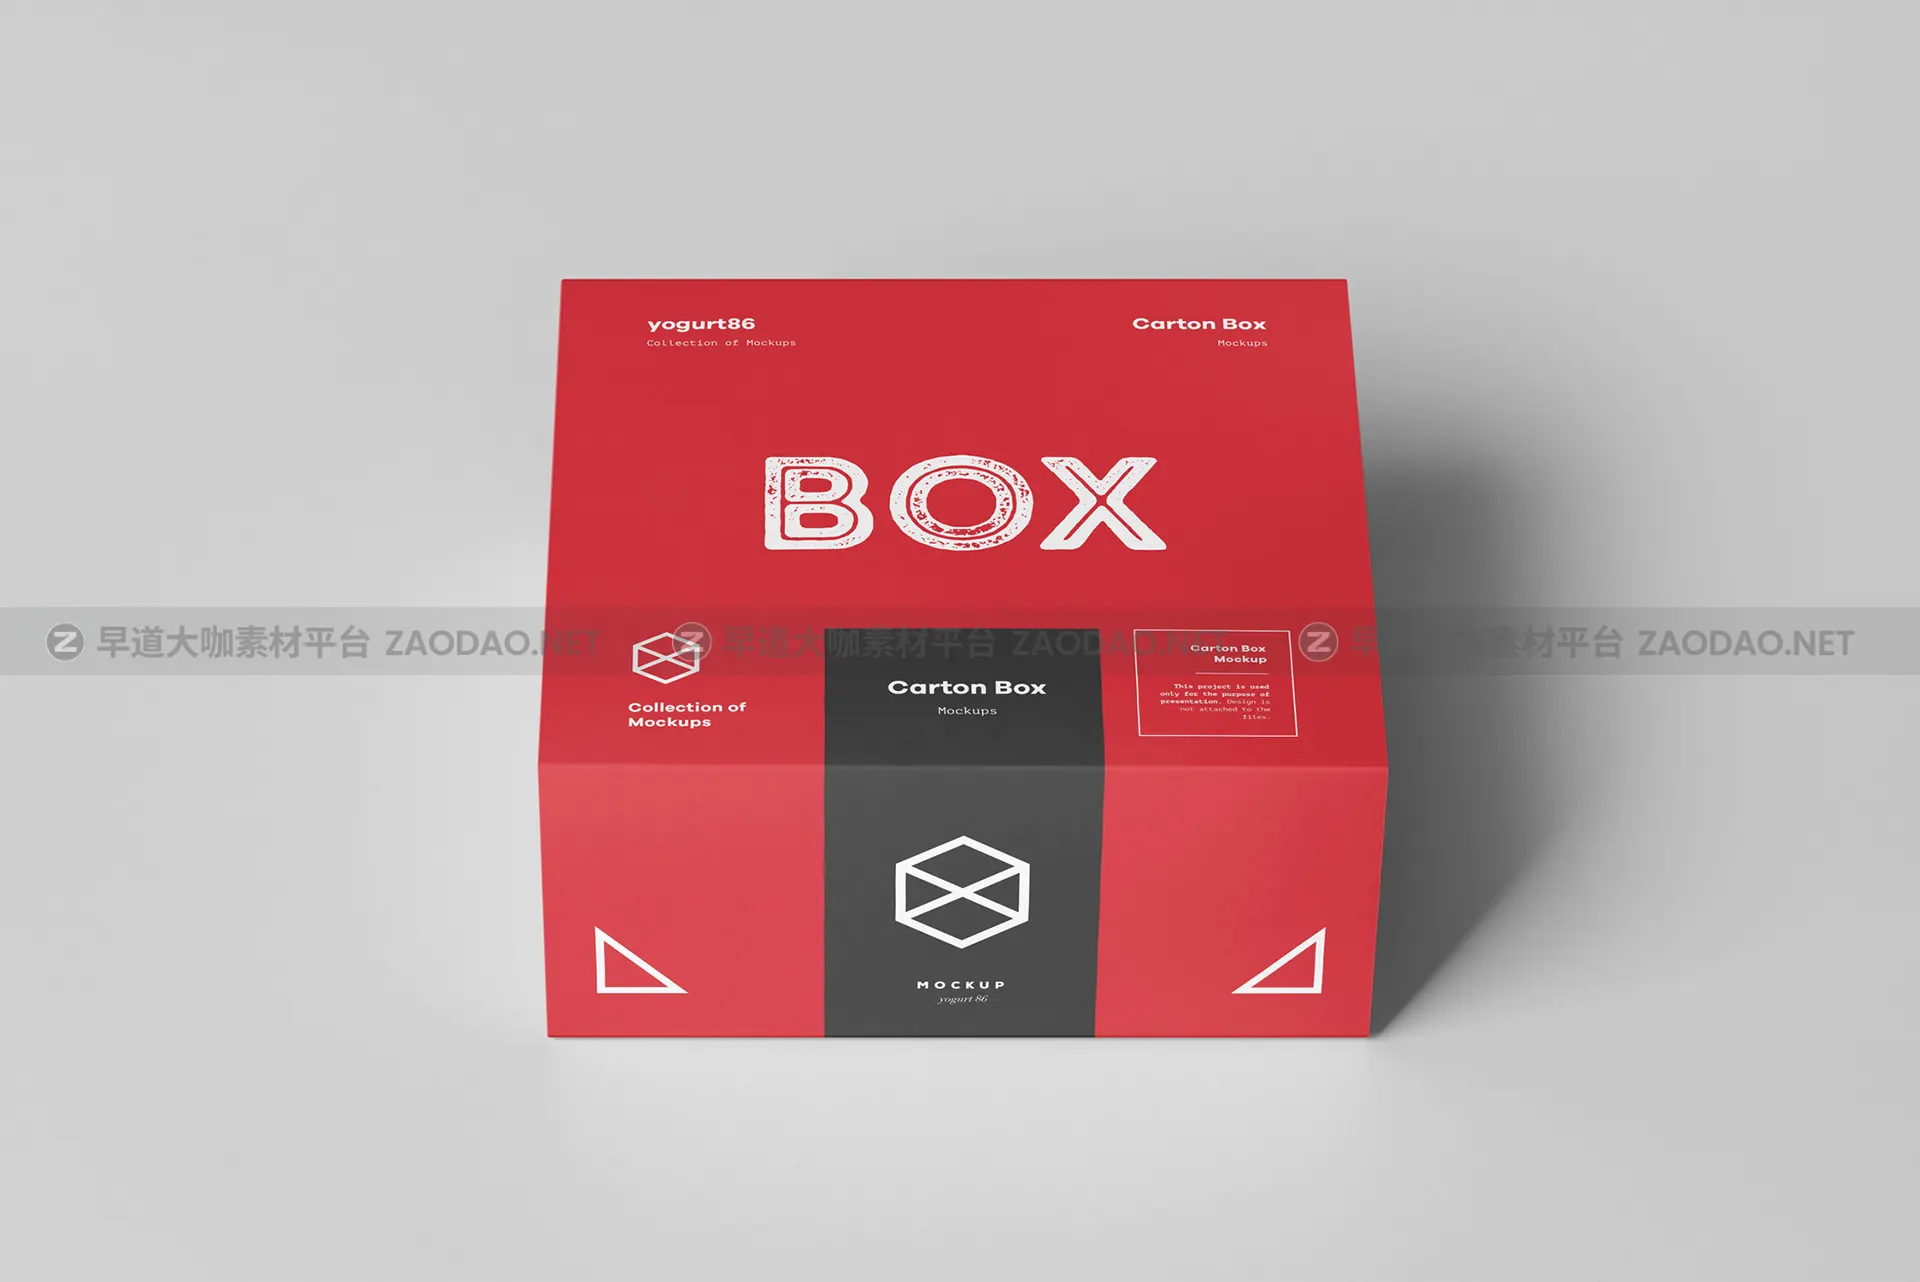 瓦楞纸产品包装纸箱设计展示样机模板 Carton Box Mockup 95x85x42插图